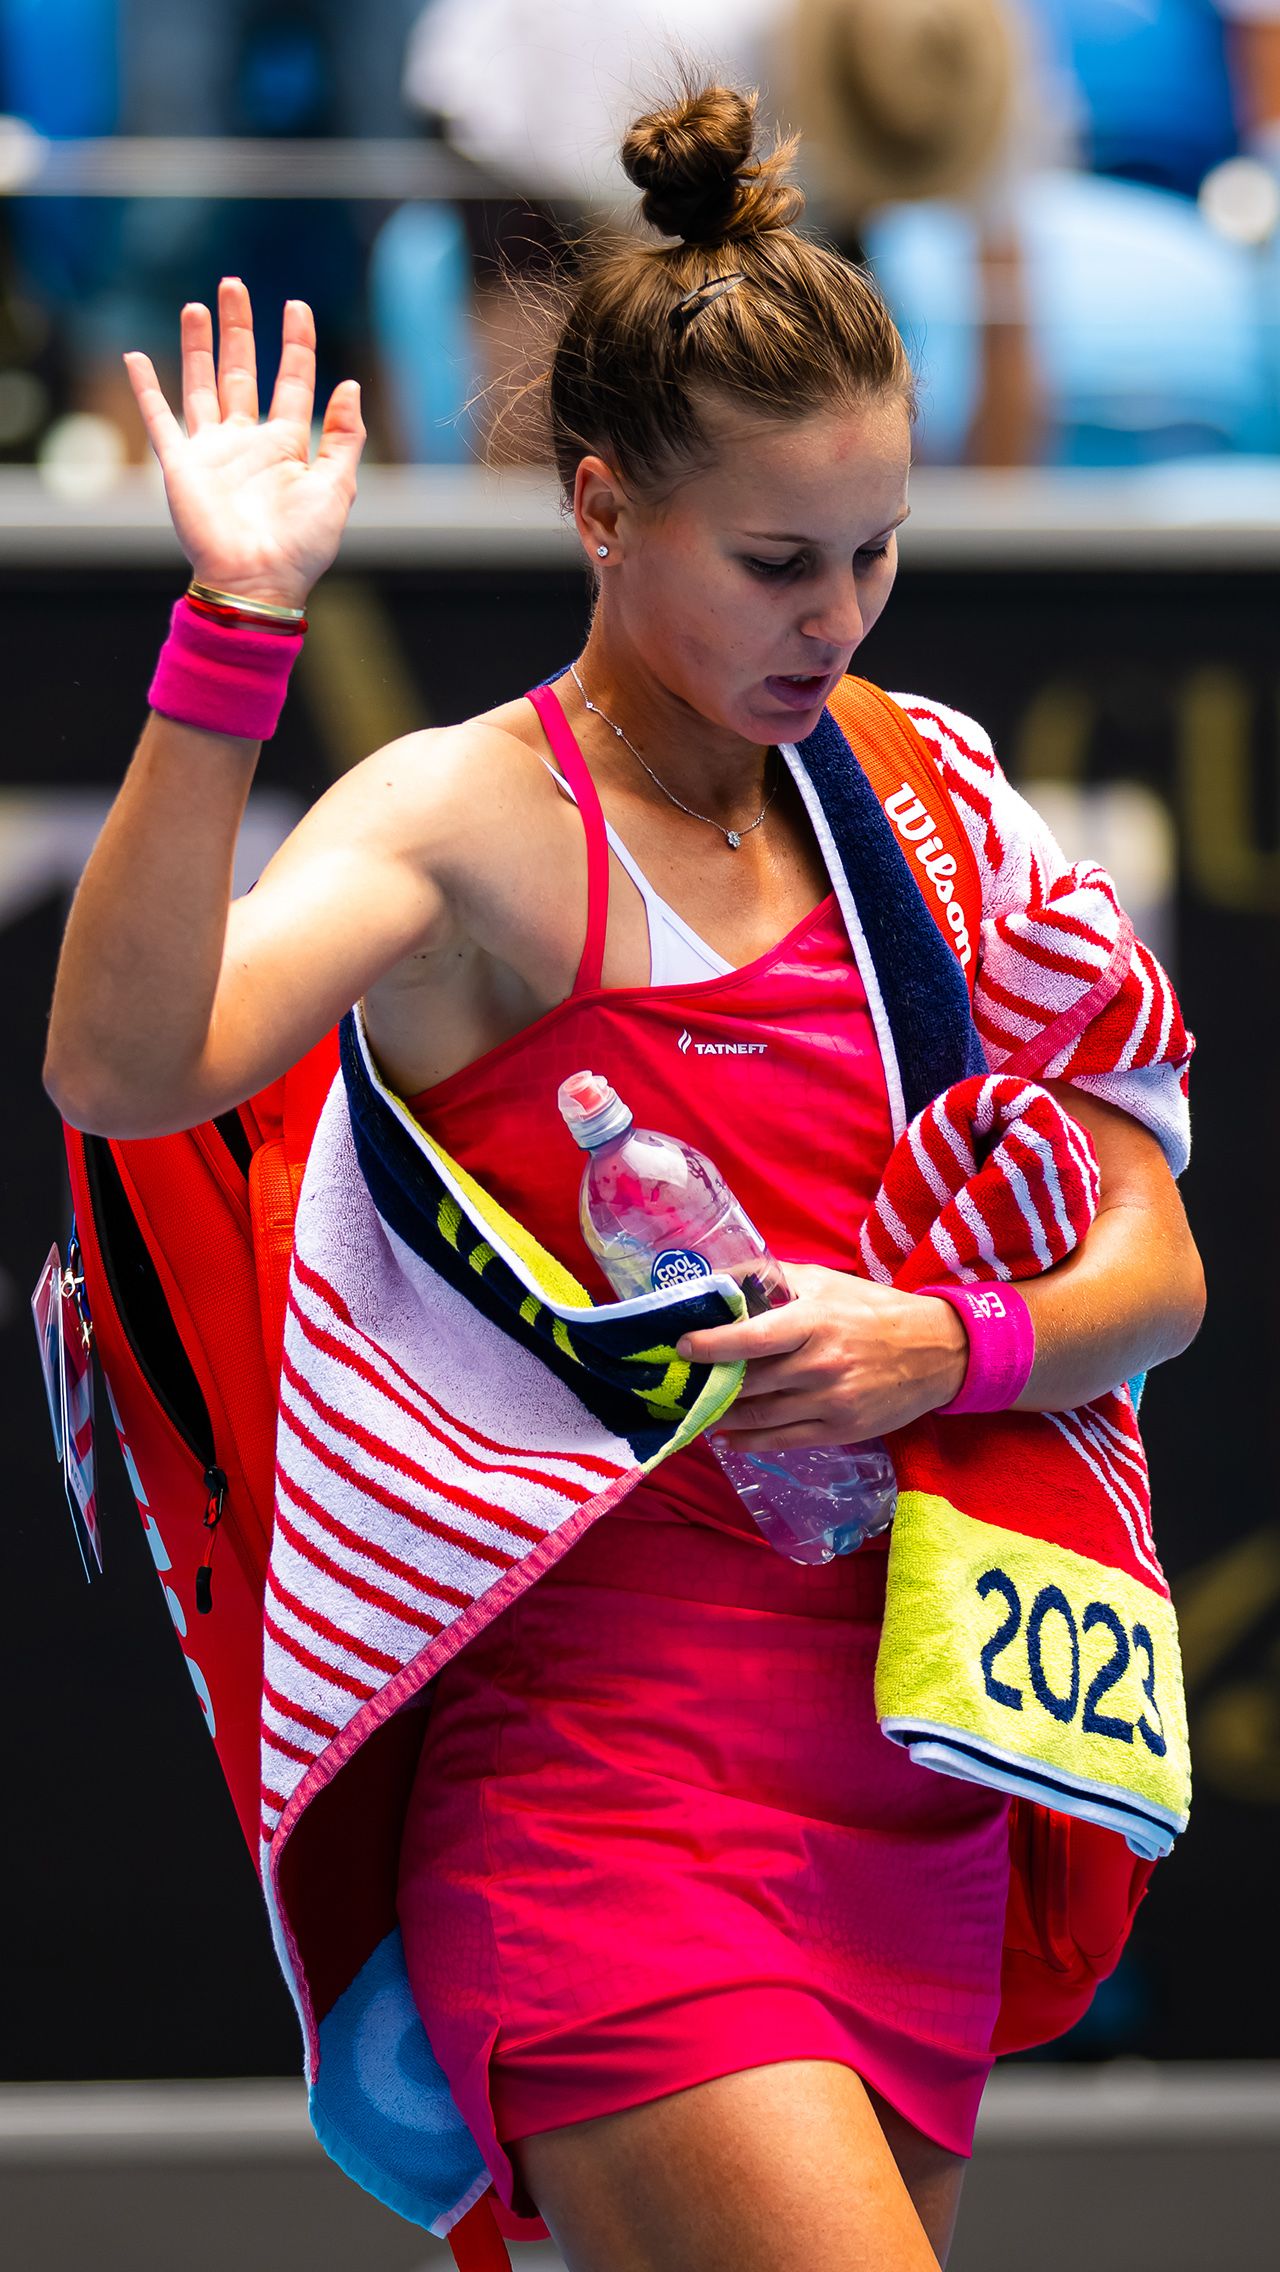 В следующем раунде поражения потерпели Вероника Кудерметова, Анастасия Потапова, Людмила Самсонова и Диана Шнайдер. Теннисистки стали богаче на $ 106 698.